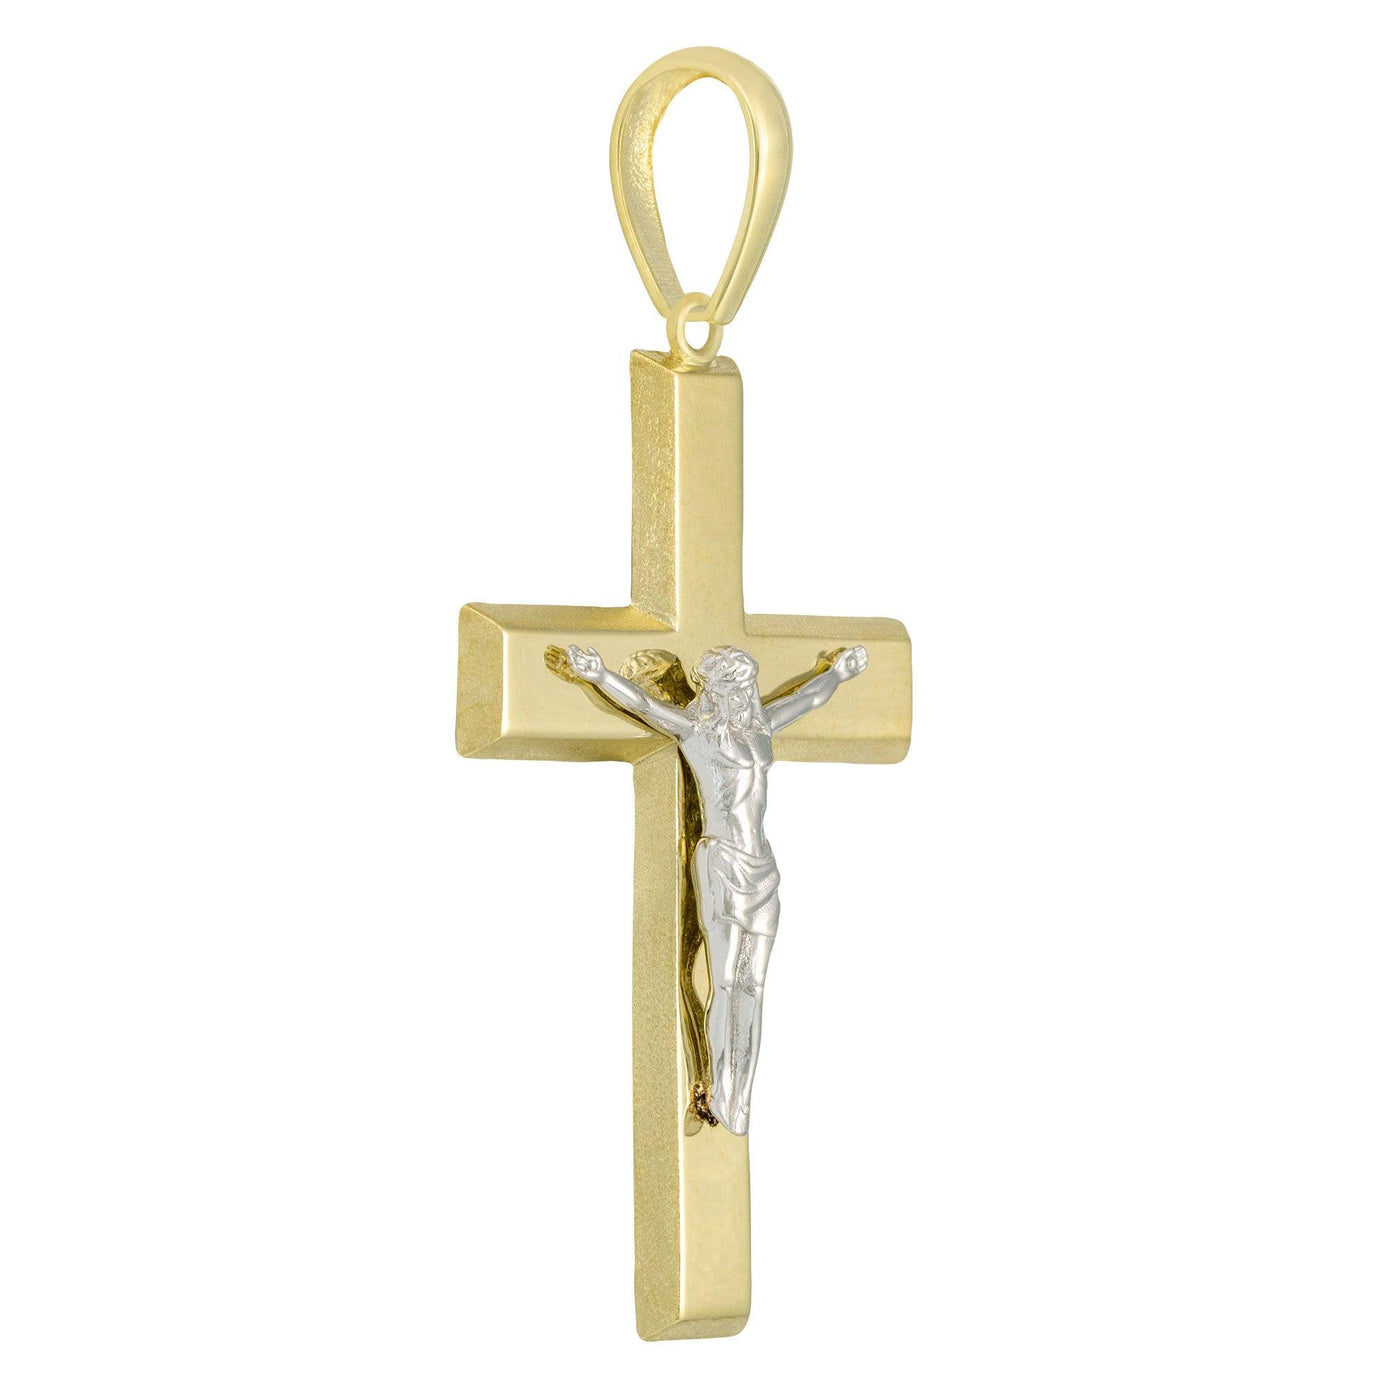 2" Polished Jesus Crucifix Cross Pendant Solid 14K Yellow Gold - bayamjewelry